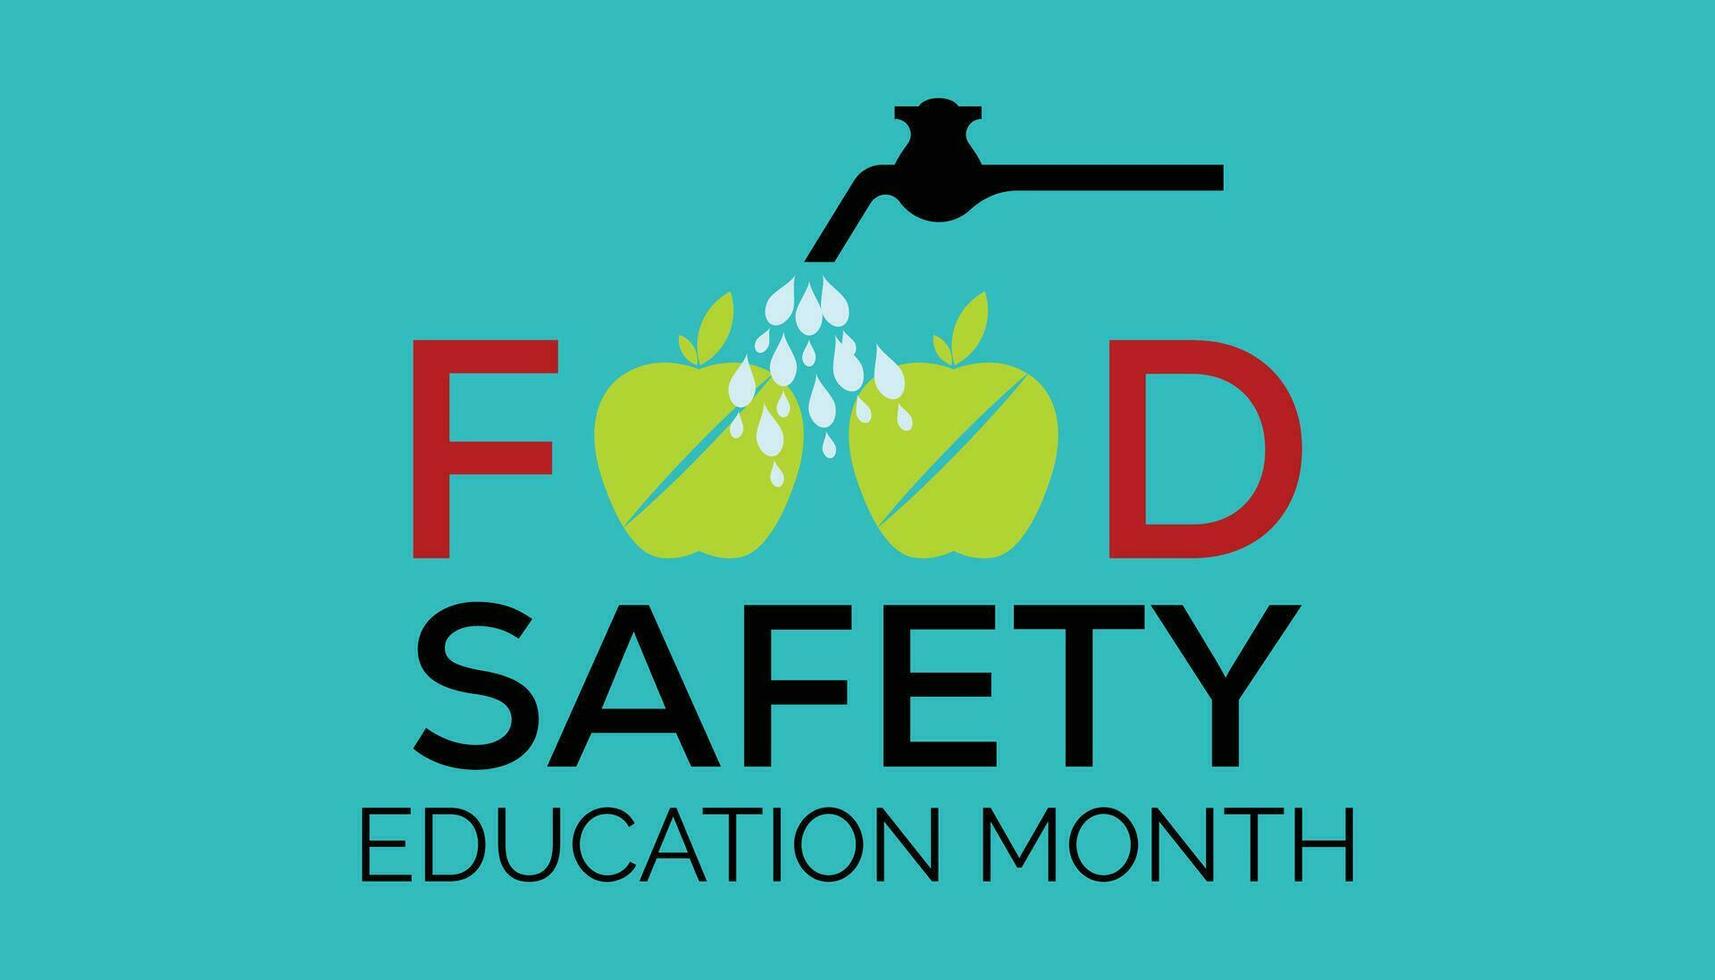 mat säkerhet utbildning månad observerats varje år under september . vektor illustration på de tema av .